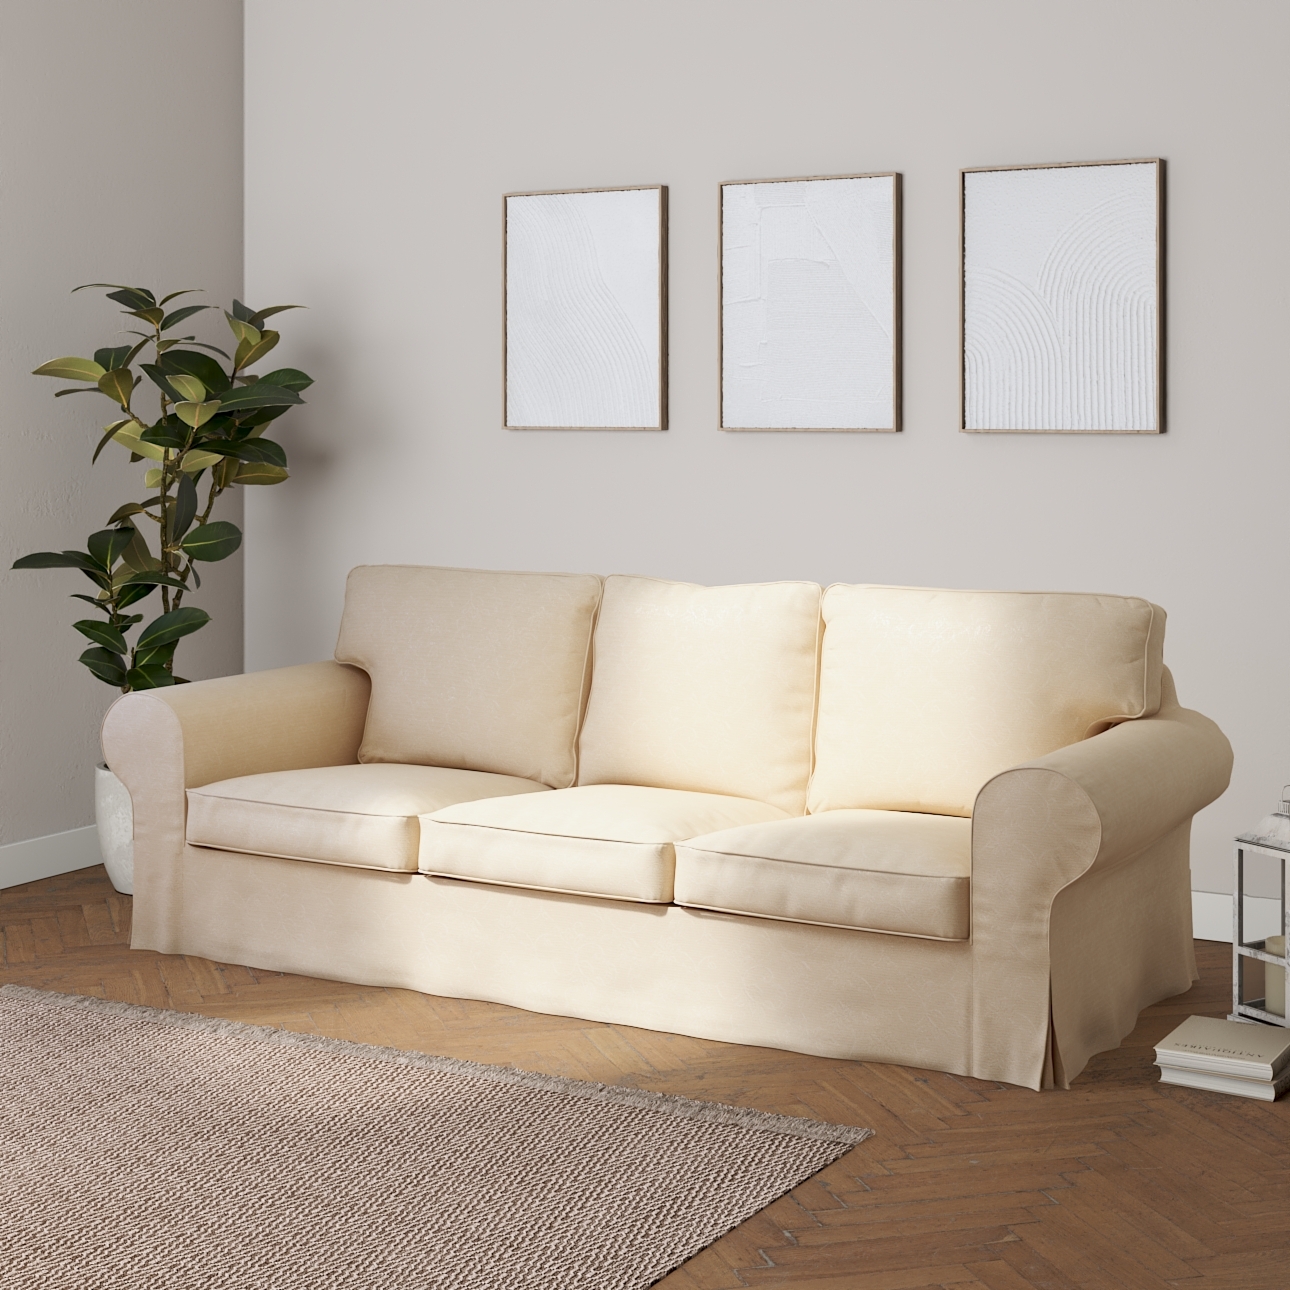 Bezug für Ektorp 3-Sitzer Sofa nicht ausklappbar, ecru, Sofabezug für Ektor günstig online kaufen